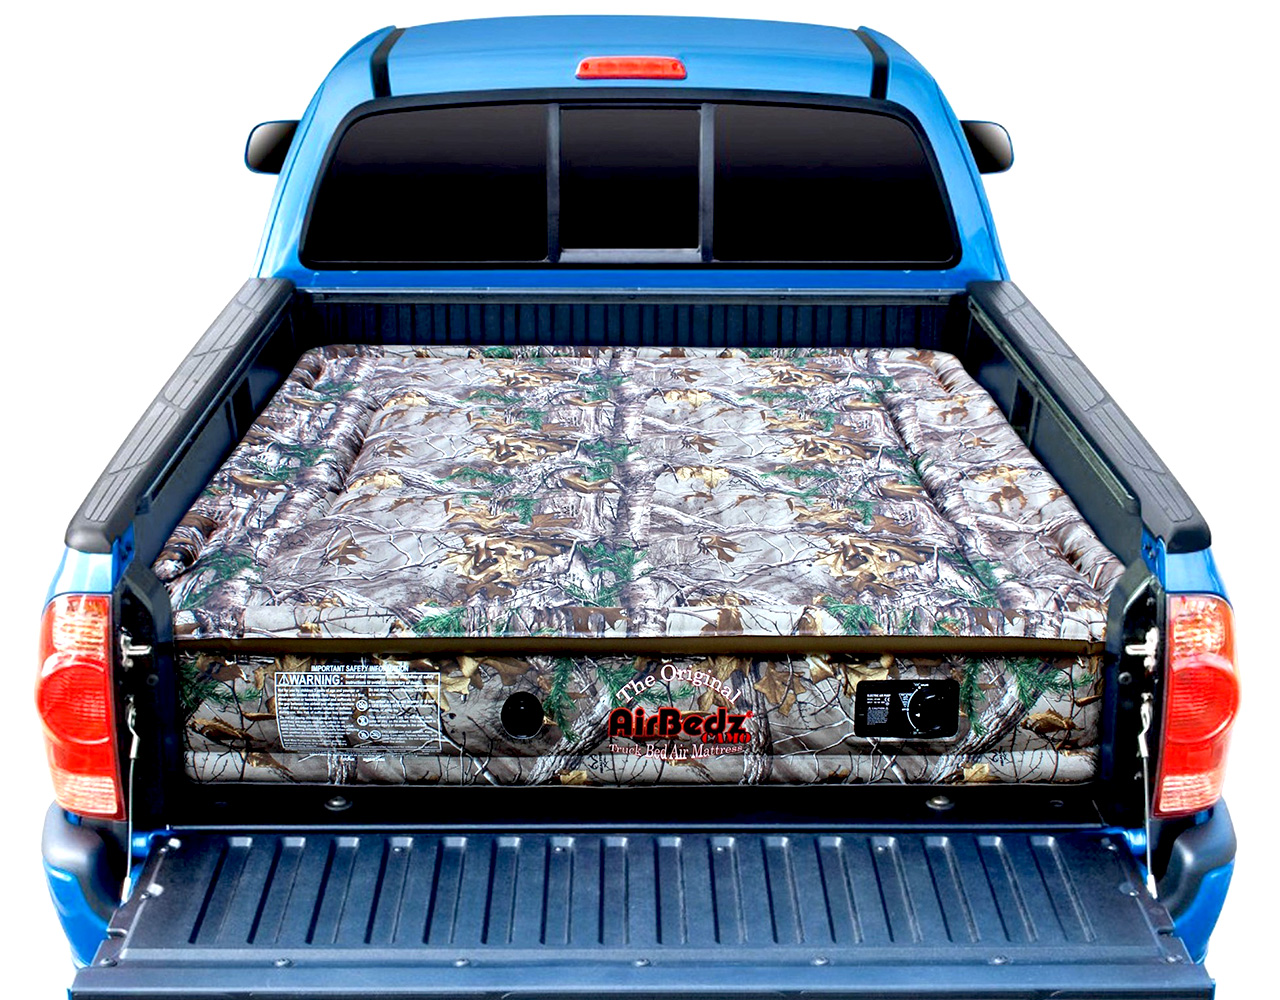 airbedz truck bed mattress